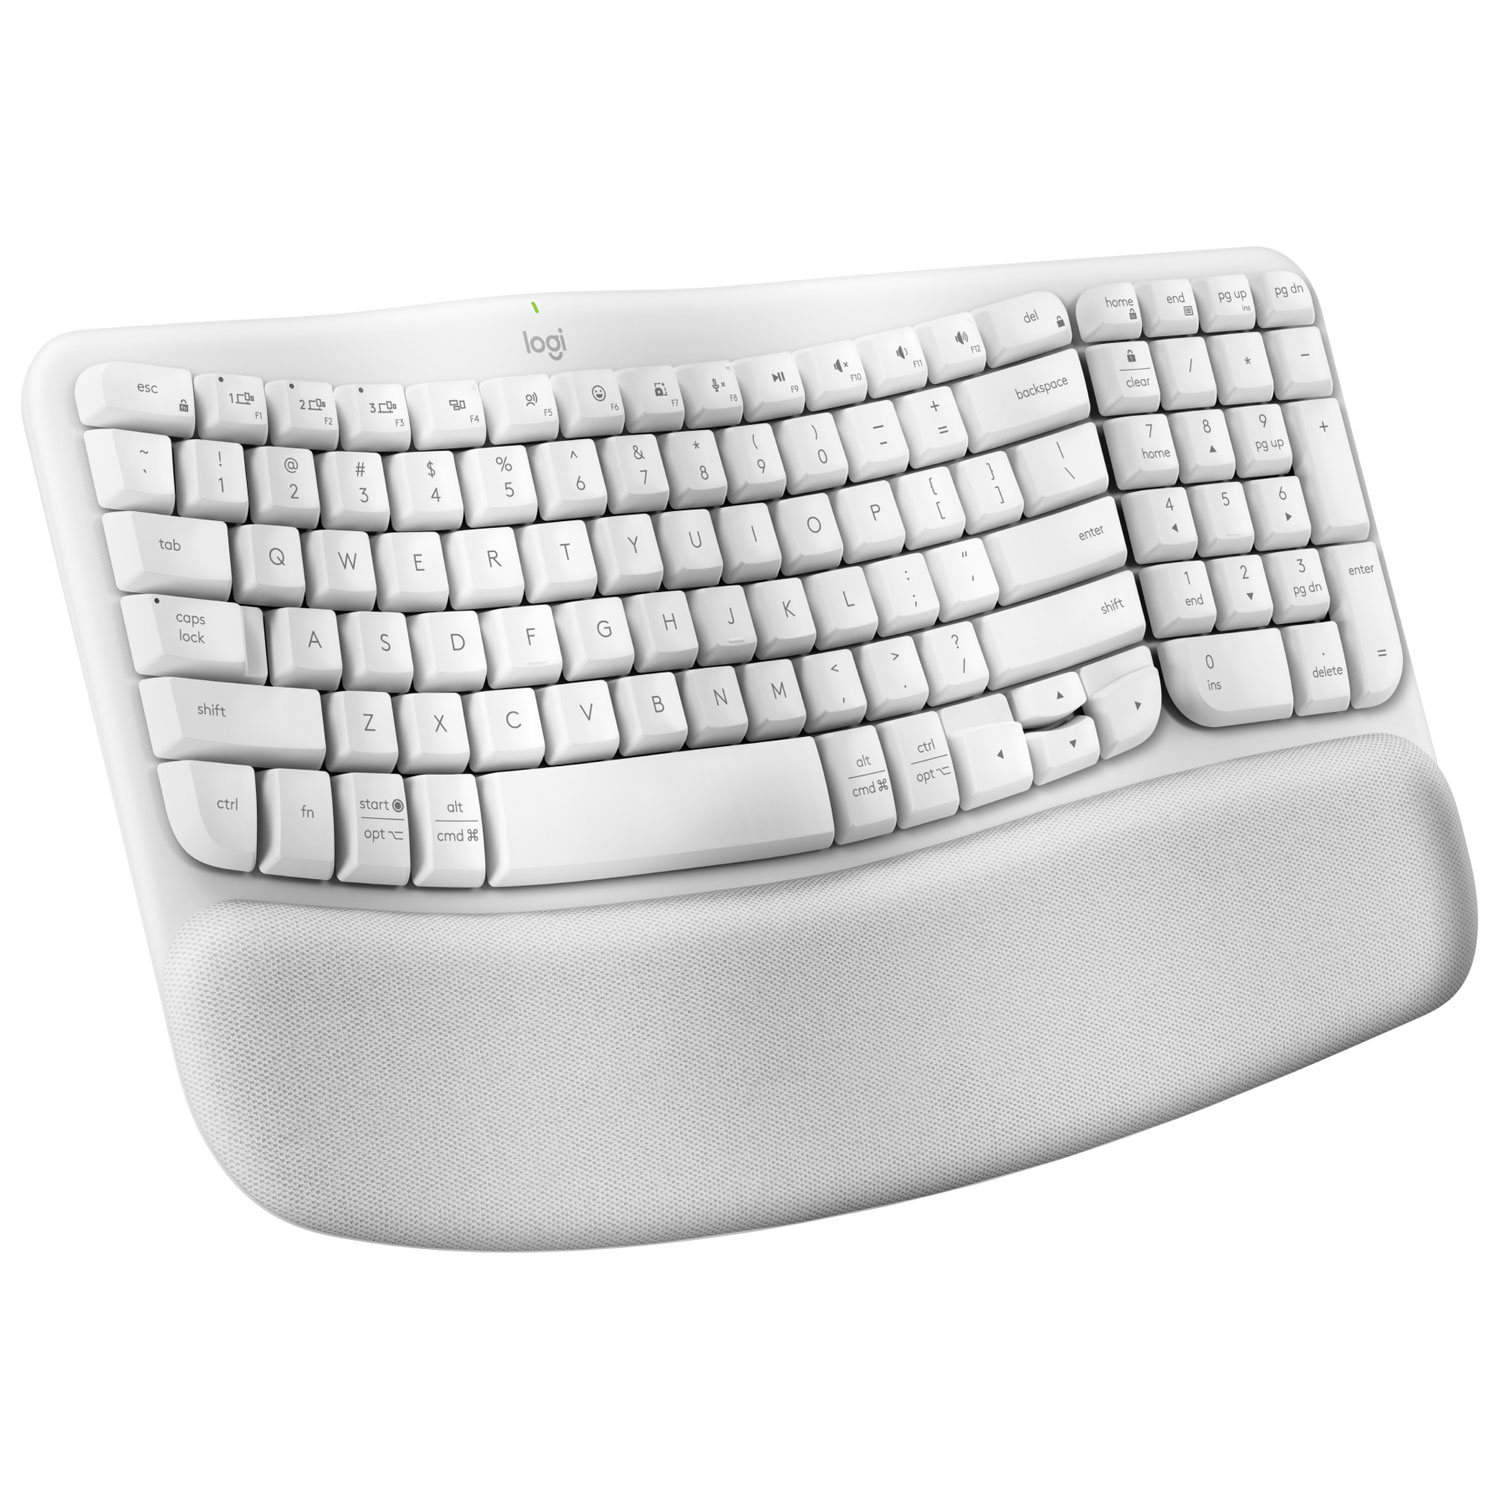 Logitech Wave Keys Wireless Ergonomic Keyboard - Off-White